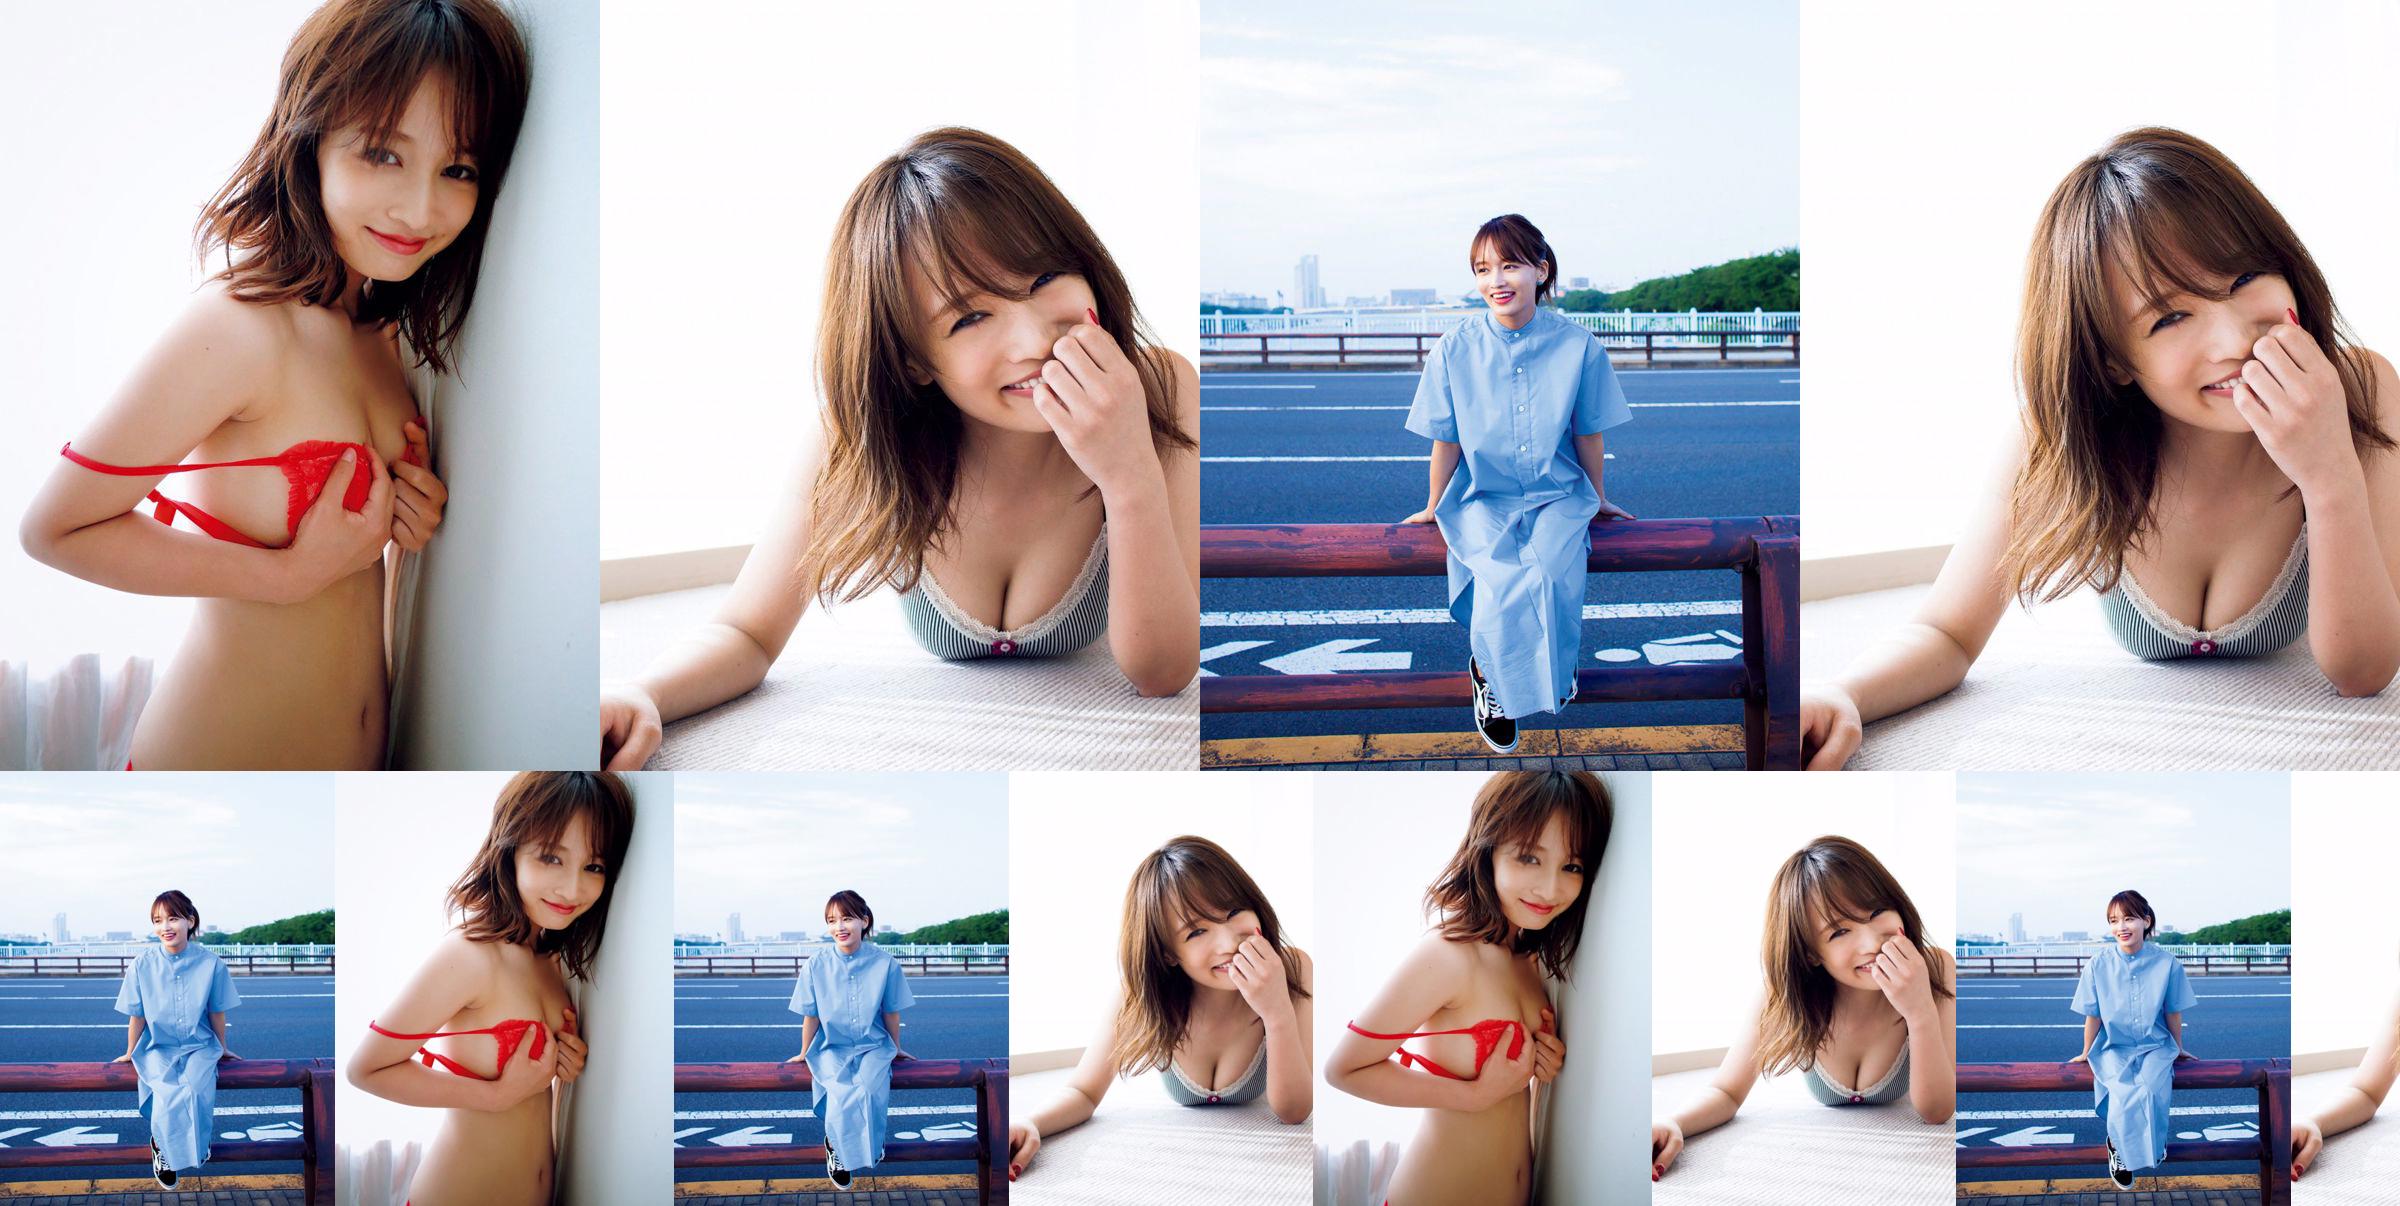 [SEXTA-FEIRA] Mai Watanabe "Copo F com corpo magro" foto No.08a703 Página 2